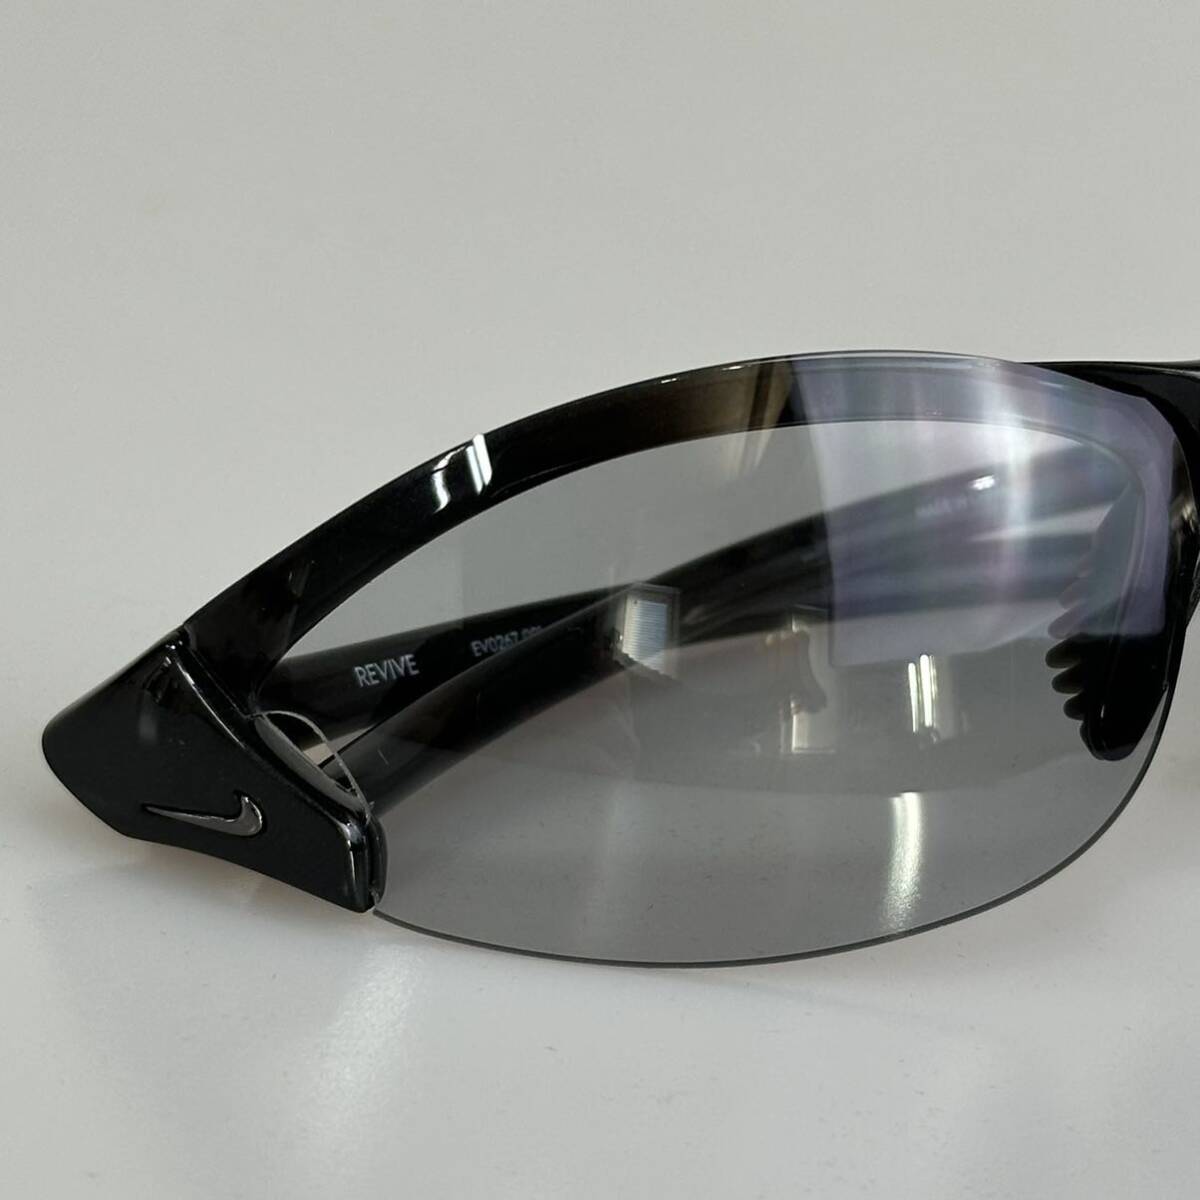 NIKE REVIVE EV0296-001 черный × серый спортивные солнцезащитные очки 